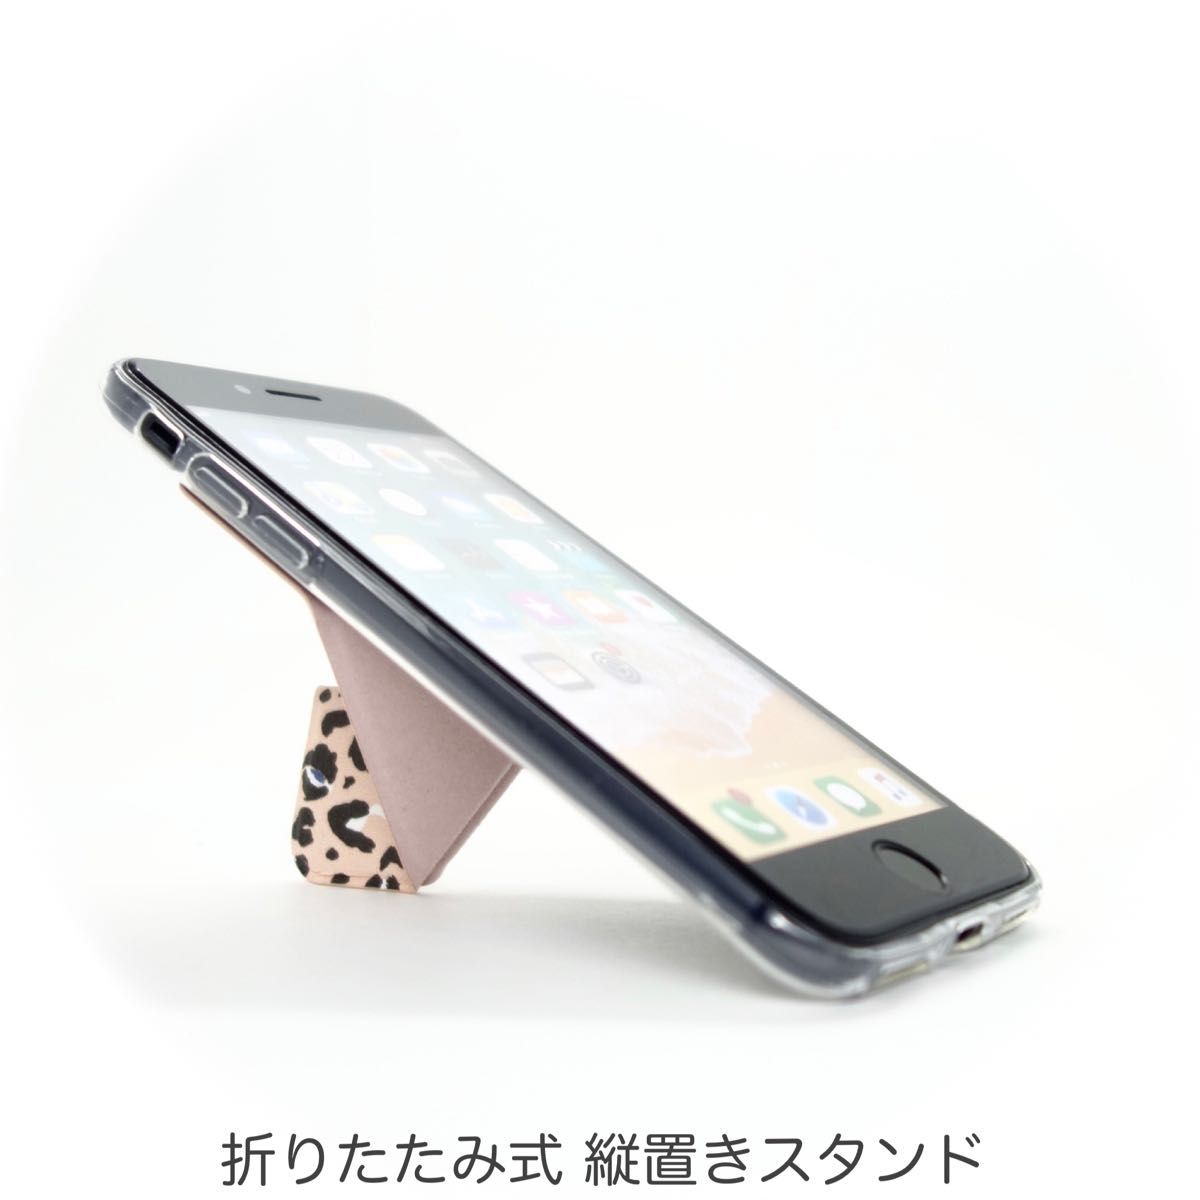 iPhone ケース SE3 SE2 8 7 スマホスタンド スマホグリップ マグネット内蔵 ワイヤレス充電OK ピンク豹柄